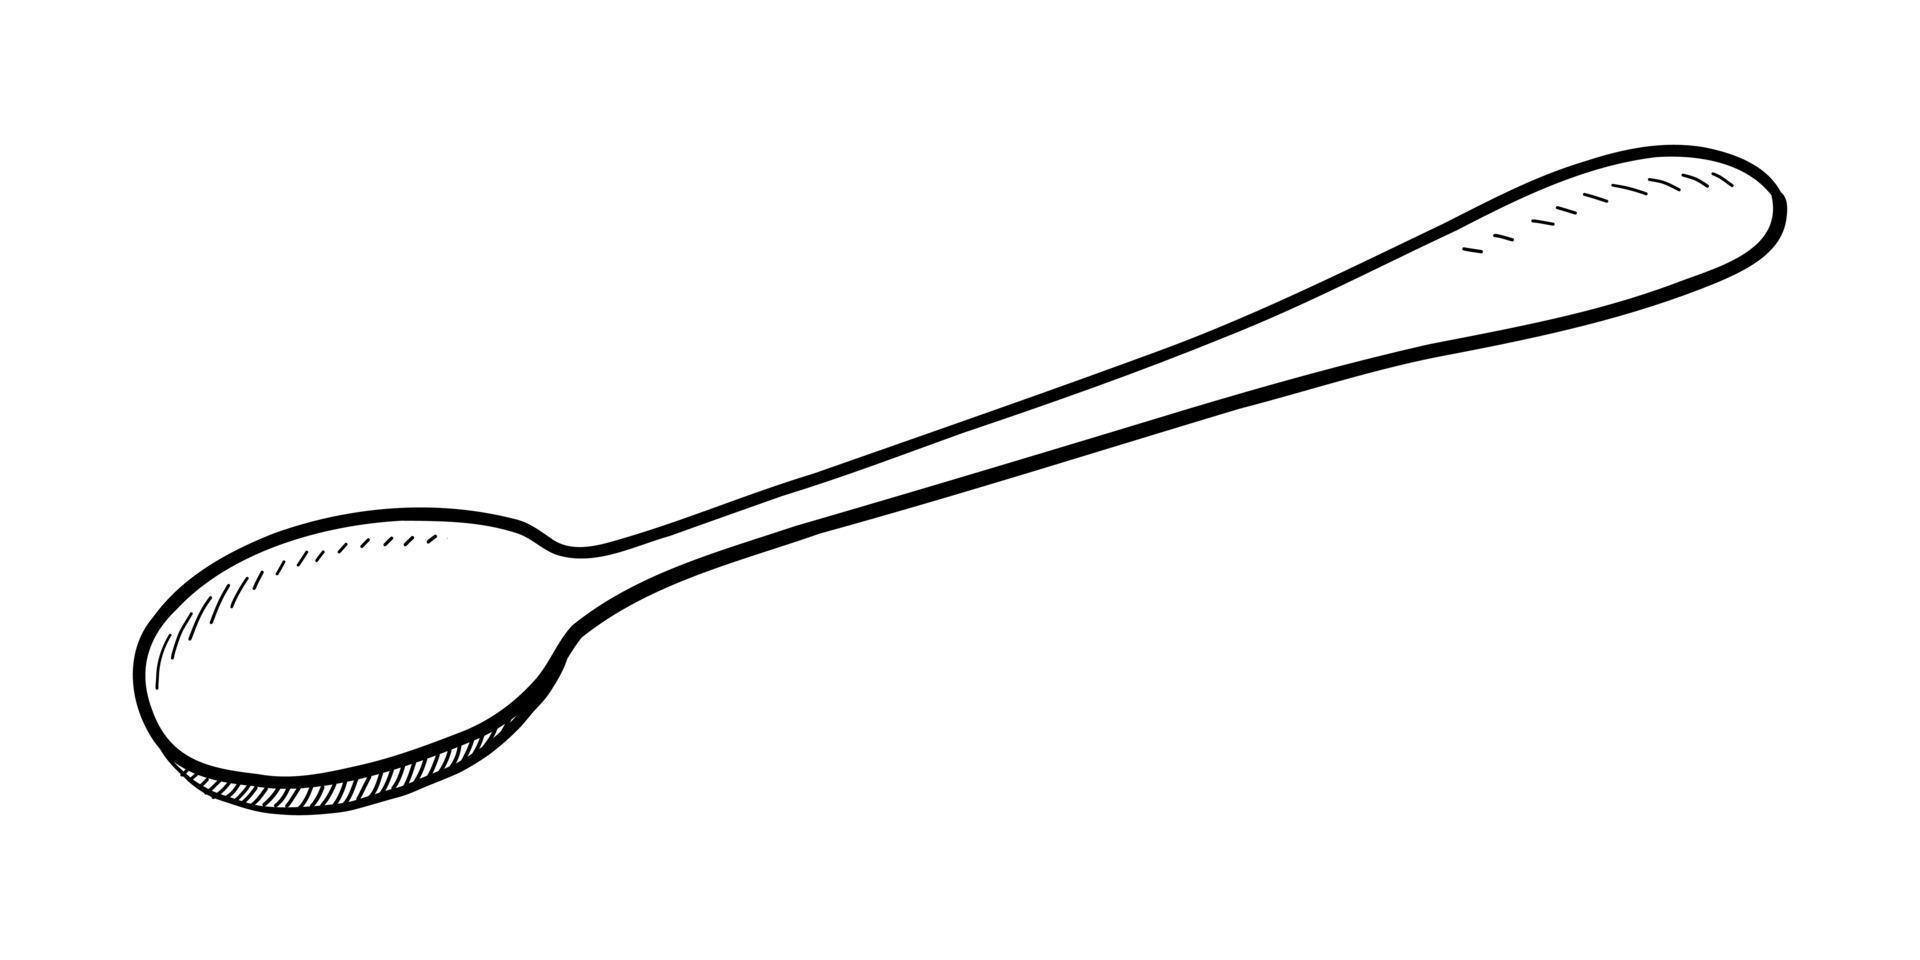 Vektor-Illustration eines Dessertlöffels isoliert auf weißem Hintergrund. Gekritzelzeichnung von Hand vektor